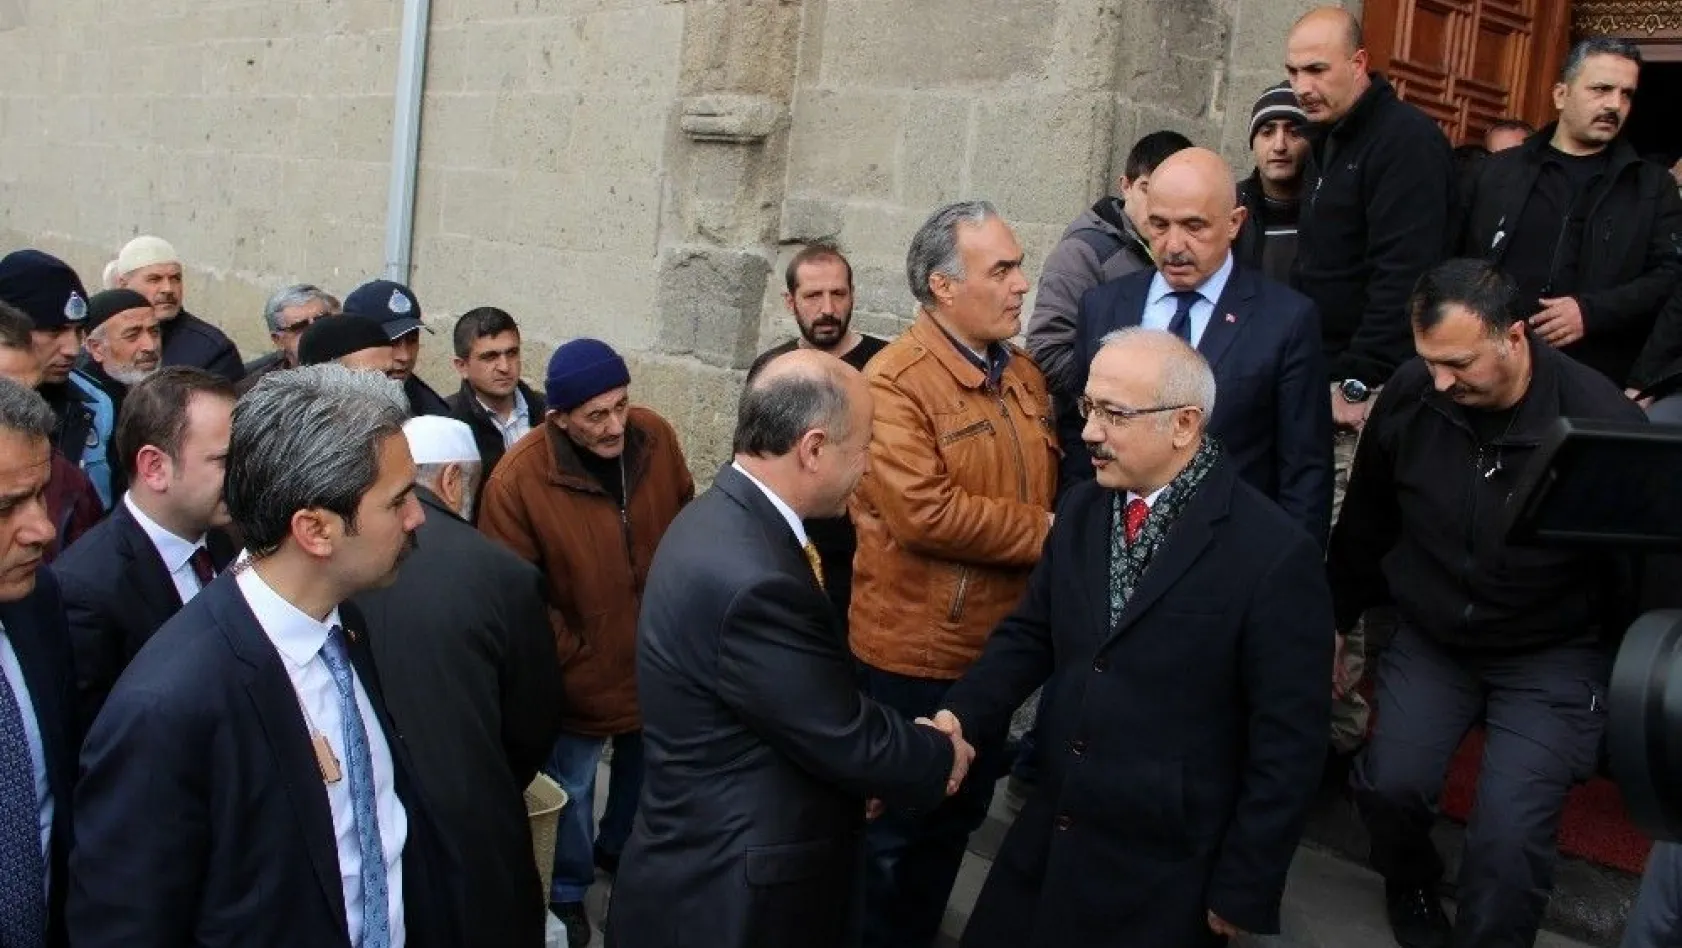 Kalkınma Bakanı Lütfi Elvan: 'Sivil vatandaşın kılına dokunulmaması konusunda her türlü hassasiyeti Mehmetçiğimiz gösterdi'
